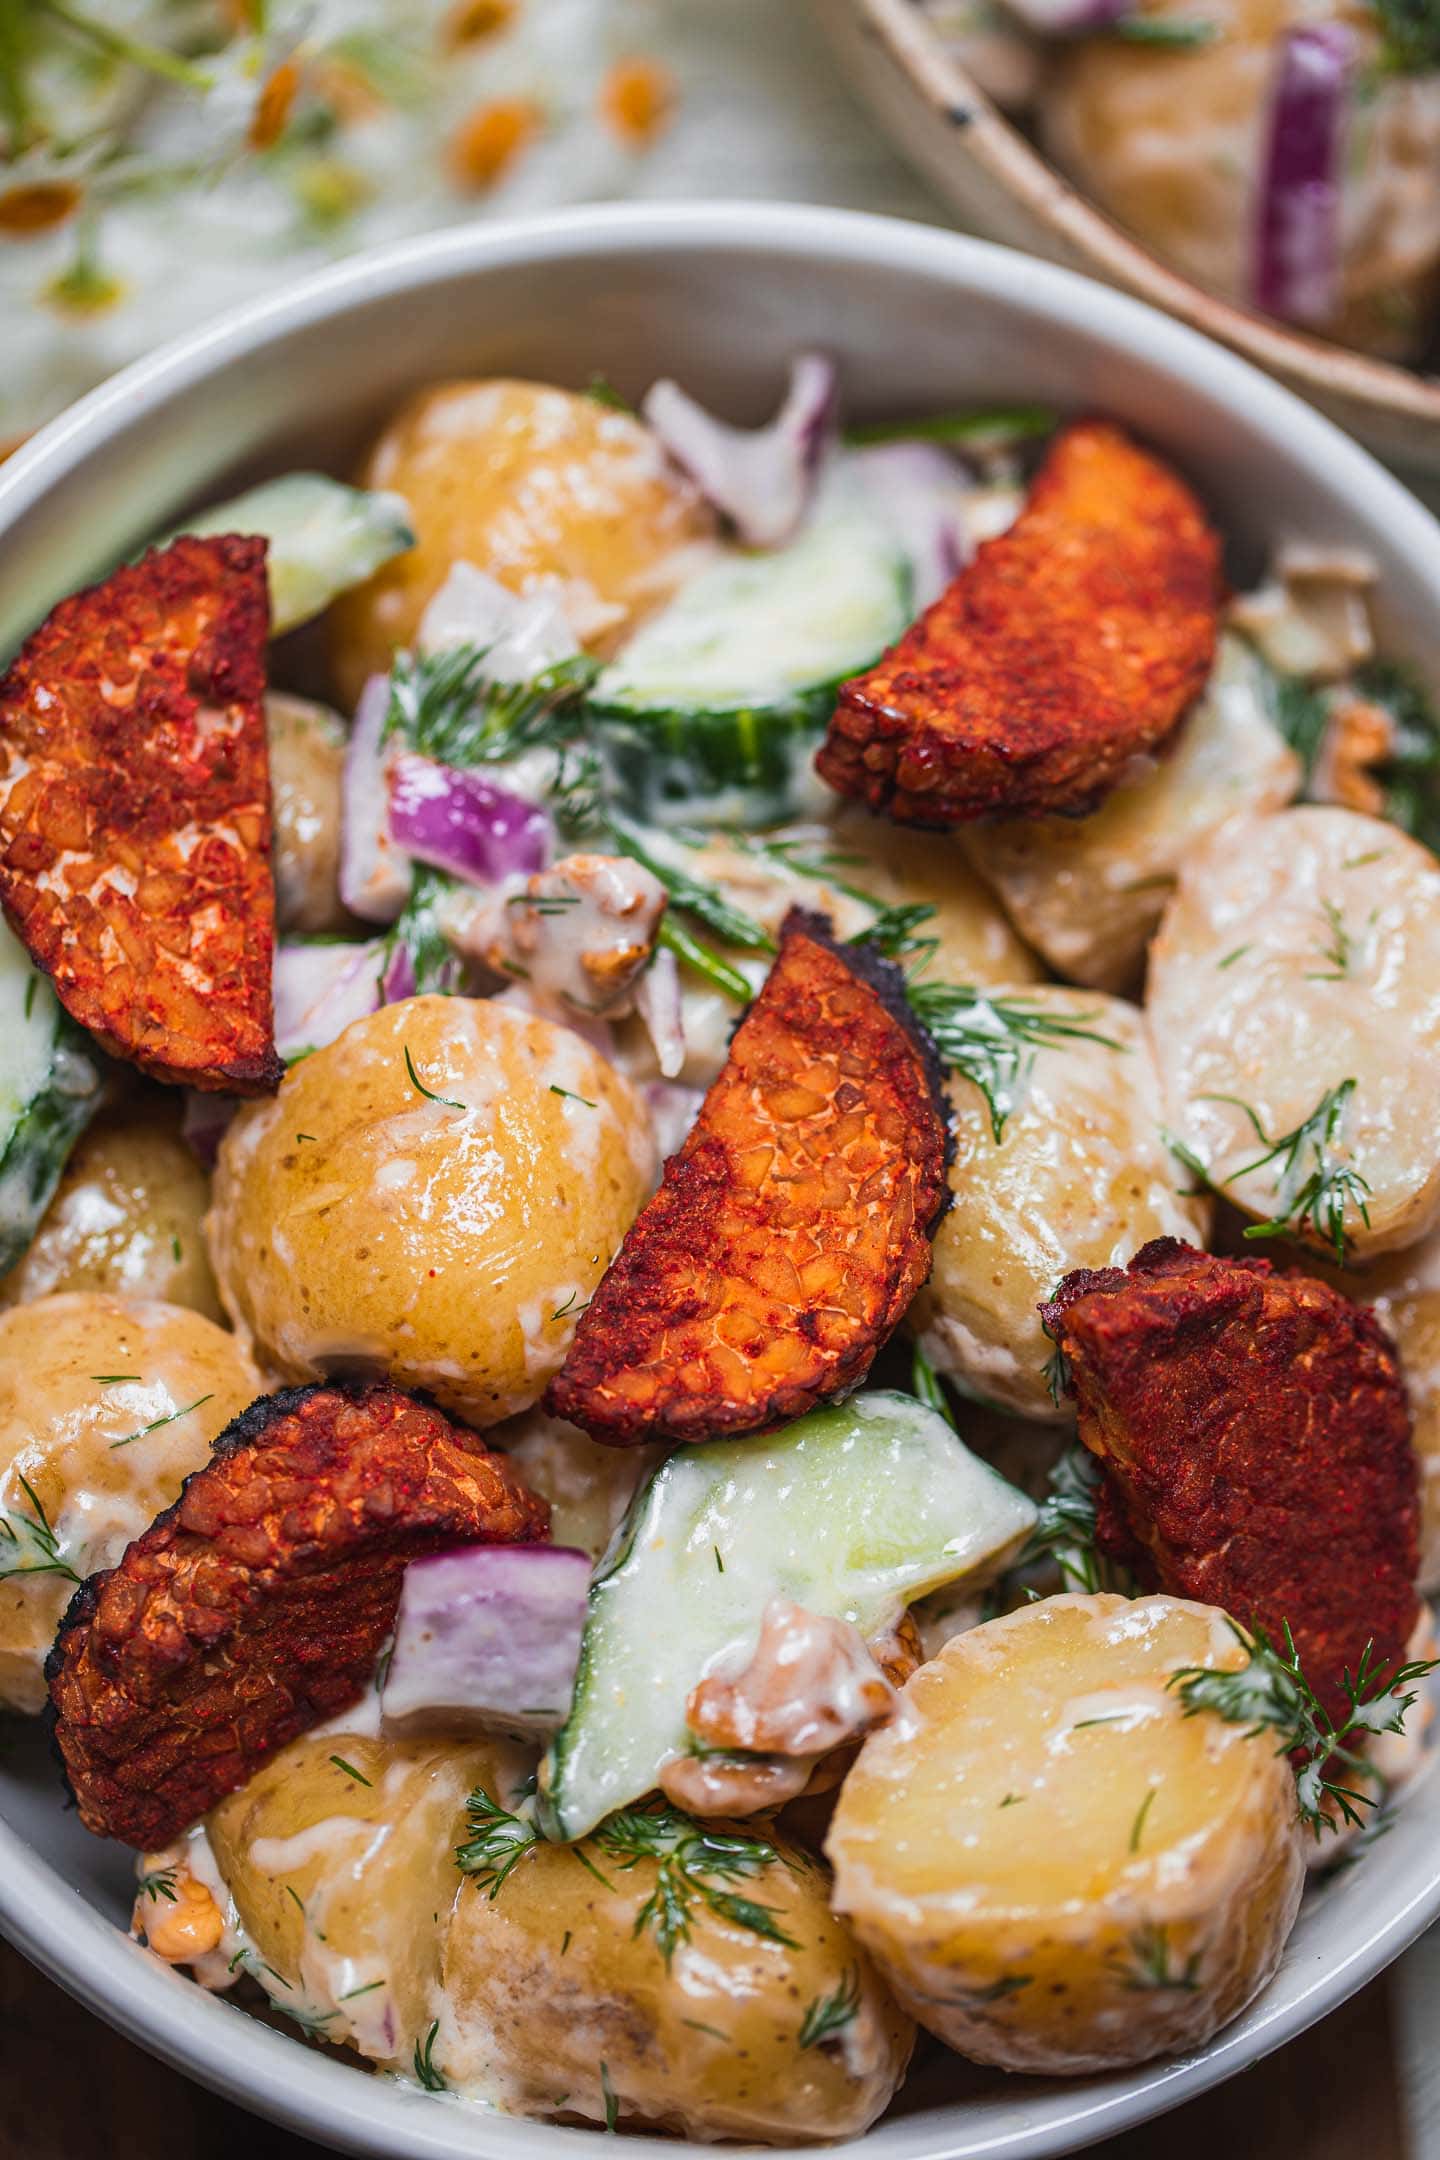 Closeup of a vegan salad with potatoes and tempeh